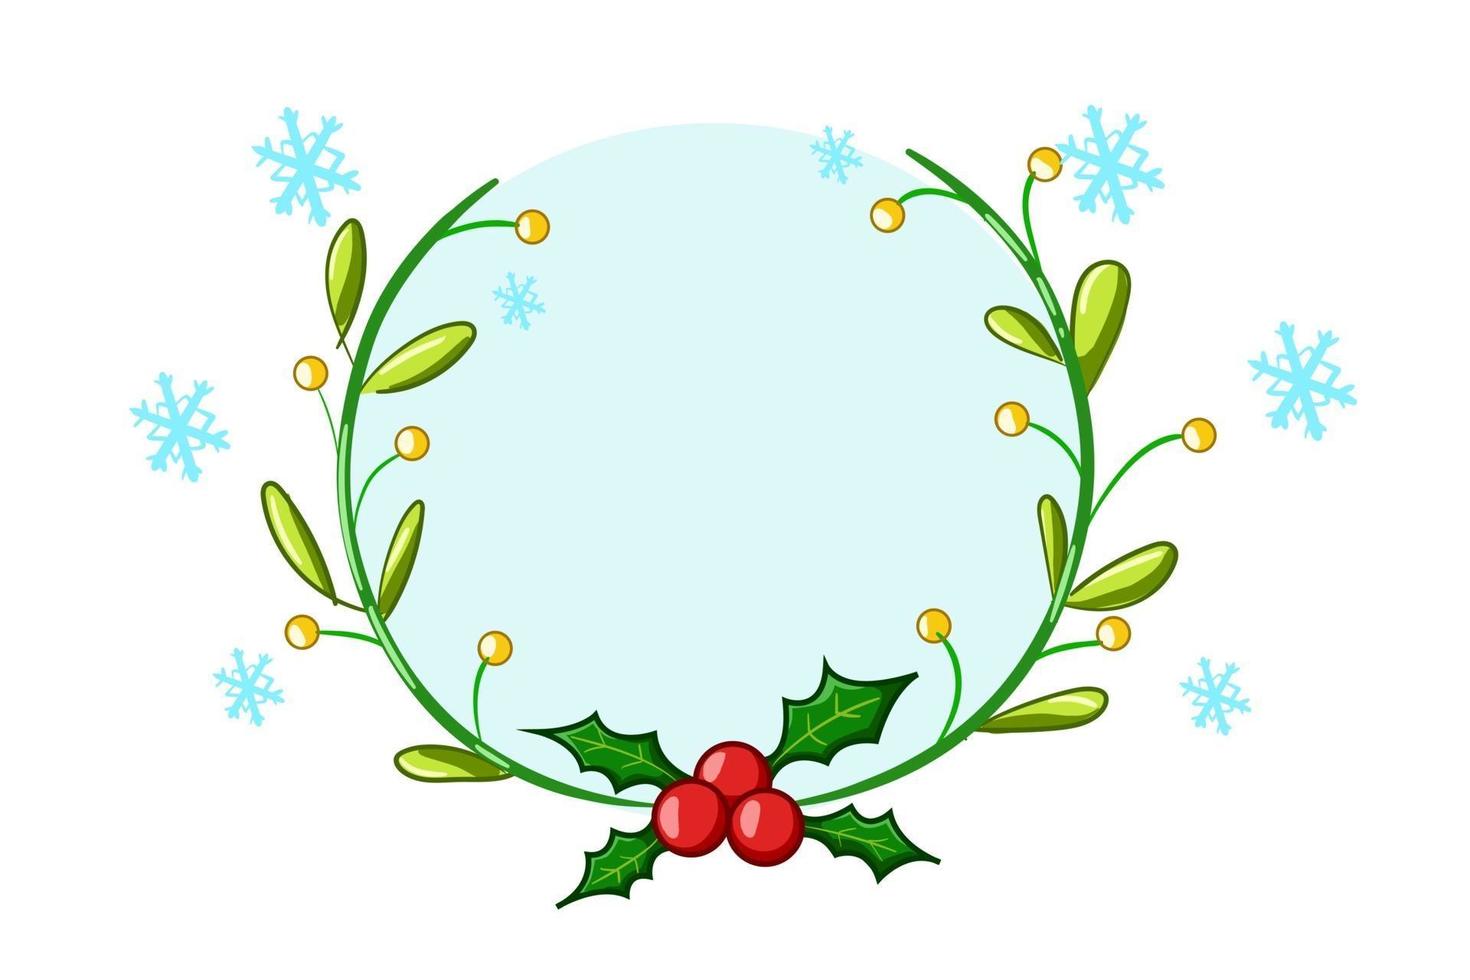 una corona di agrifoglio a tema natalizio con illustrazione di cristalli blu vettore